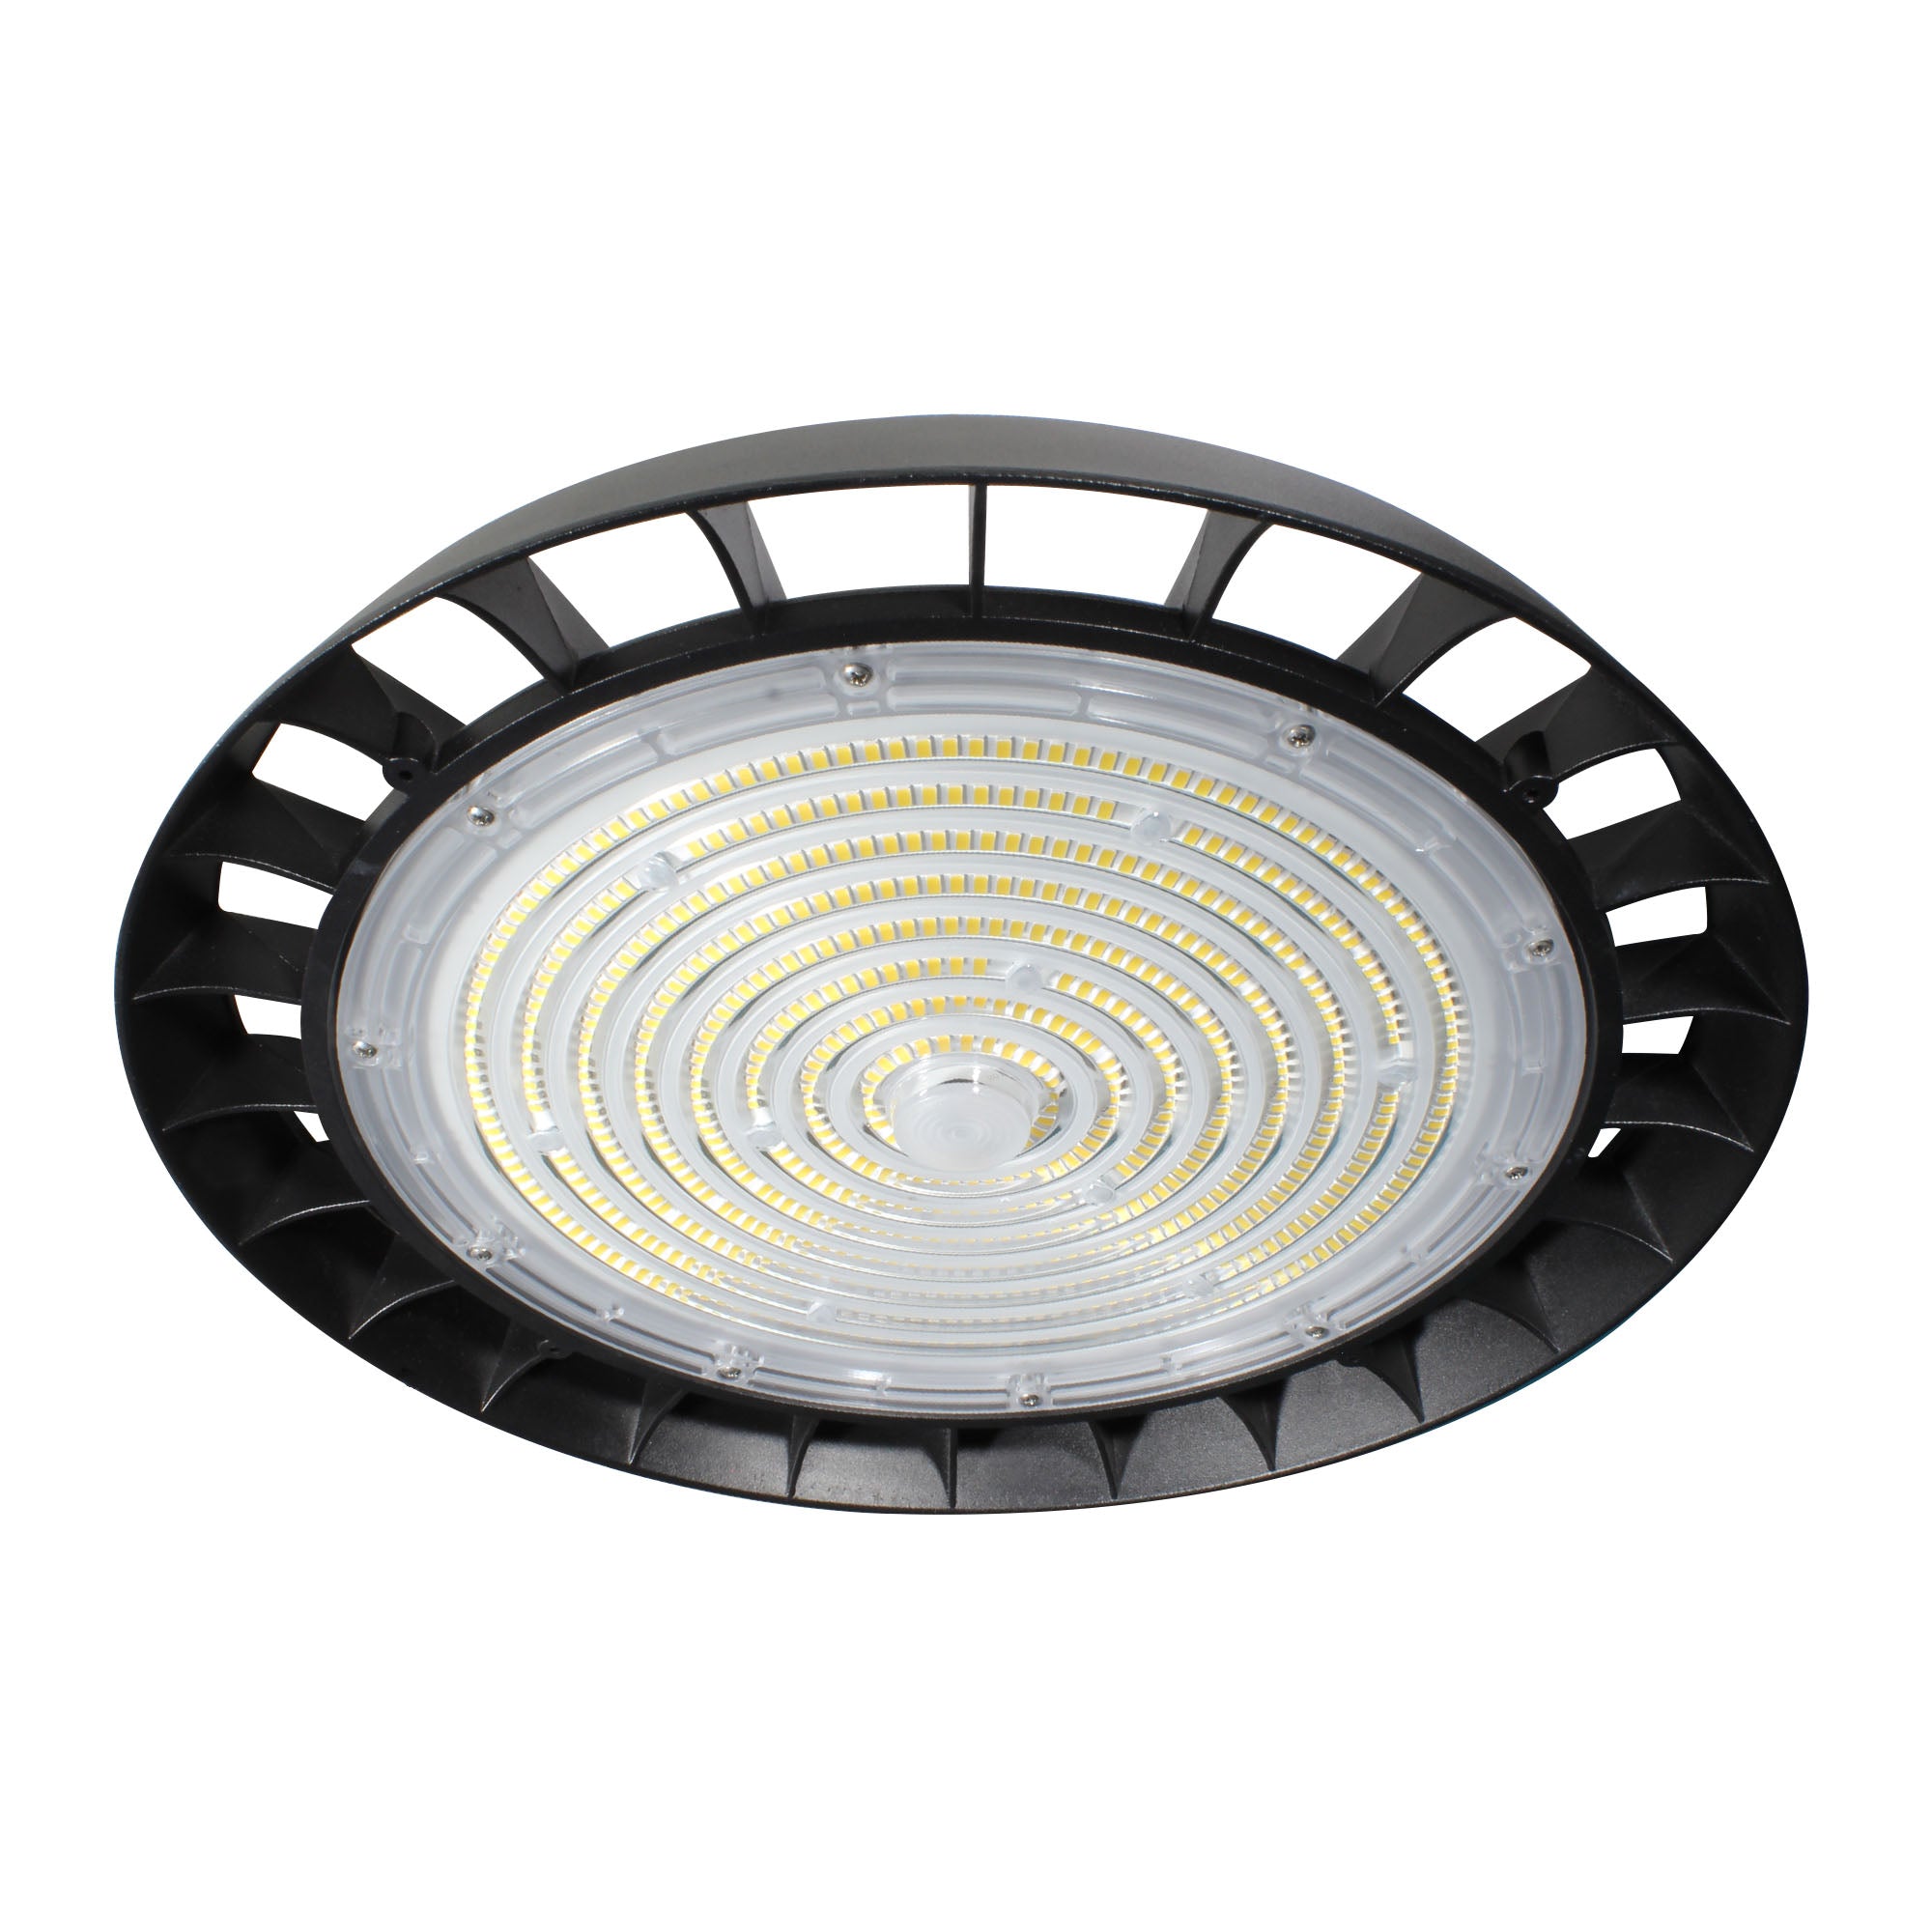 Luminaria LED HIGH BAY Industrial de Suspensión en Techo, Modelo TL-47200.NHB50120 Illux